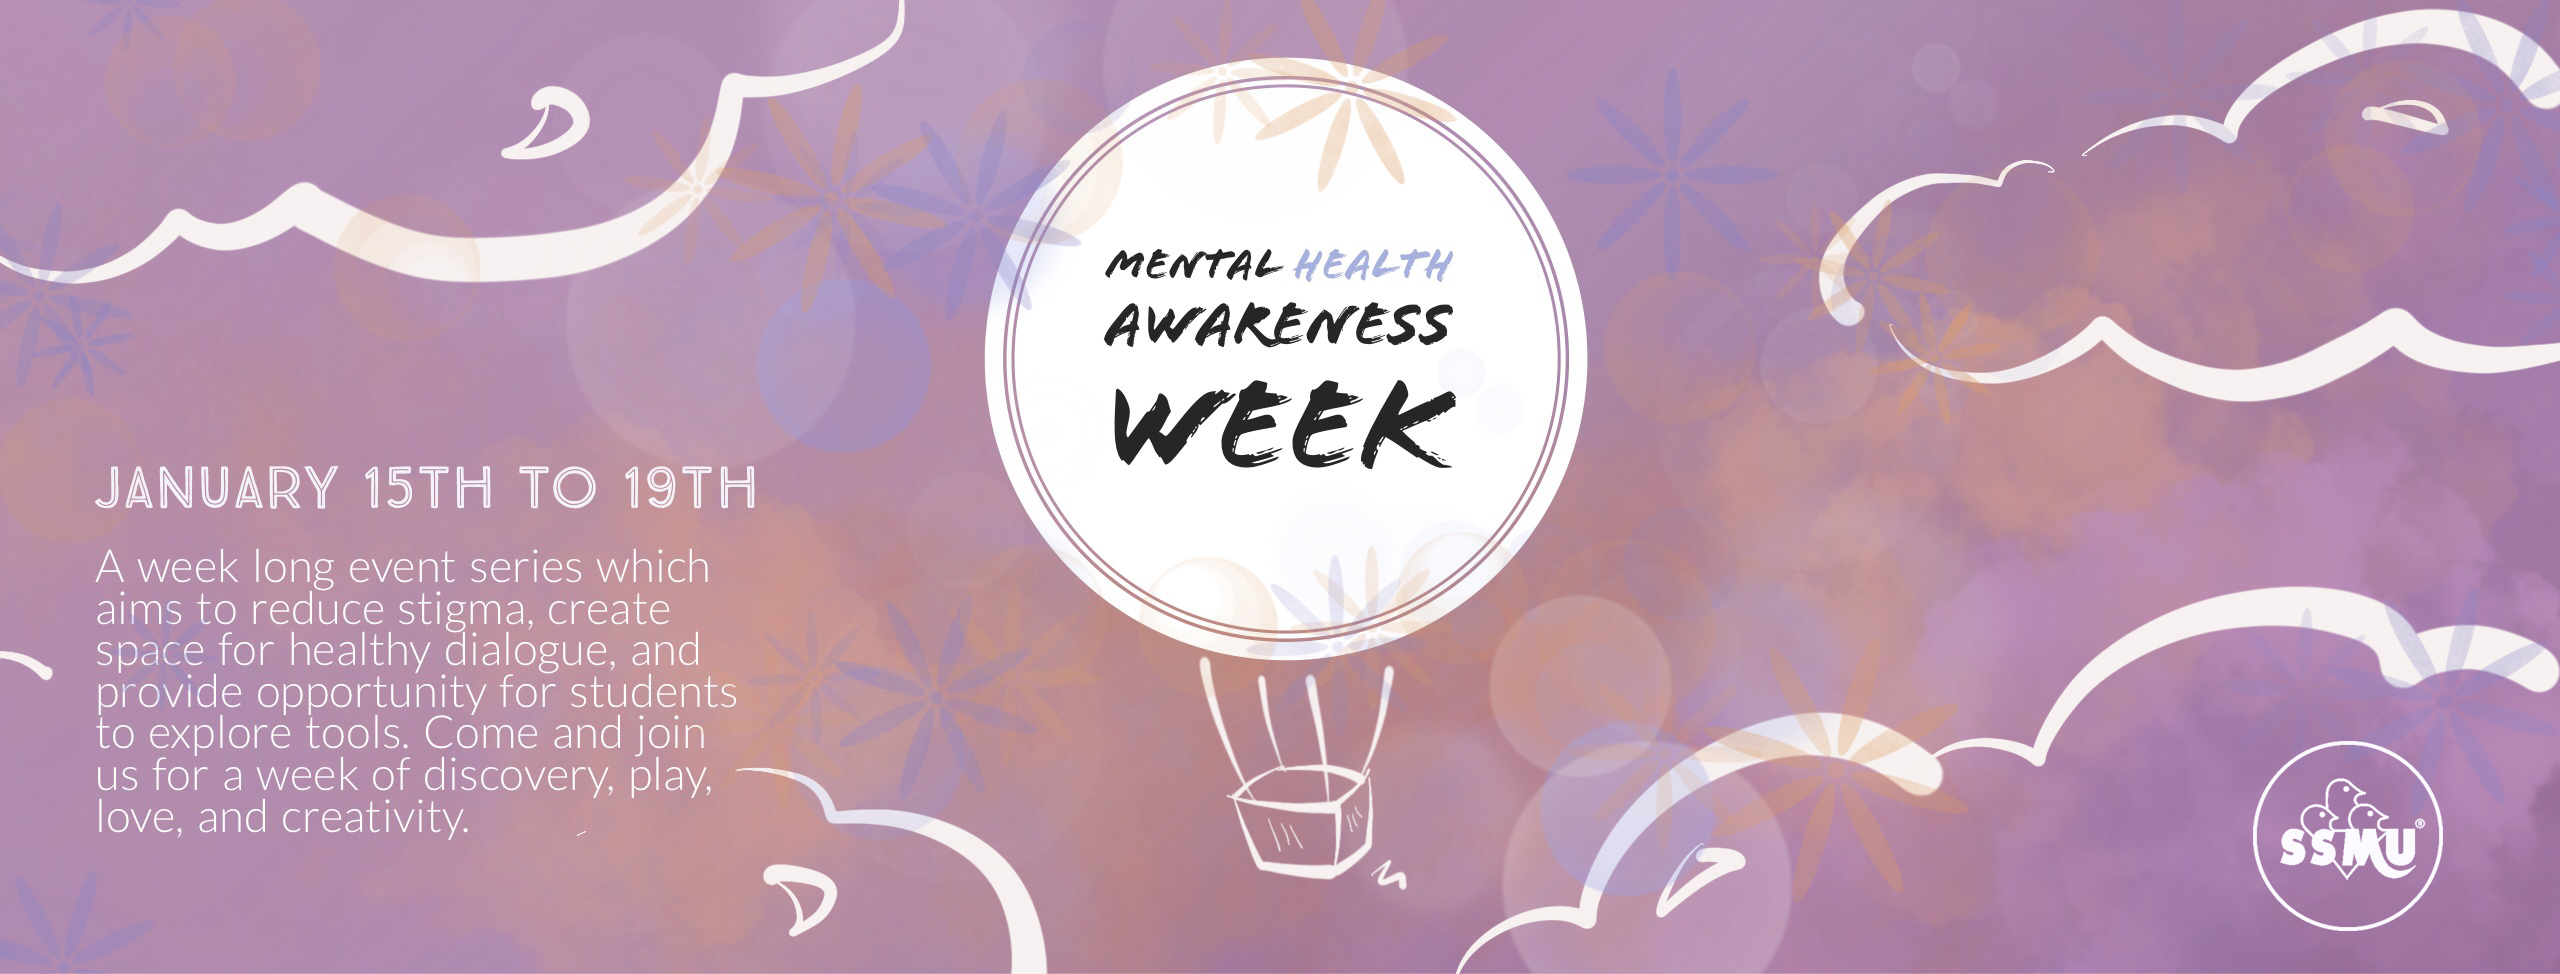 Mental Health Awareness Week: Workshops